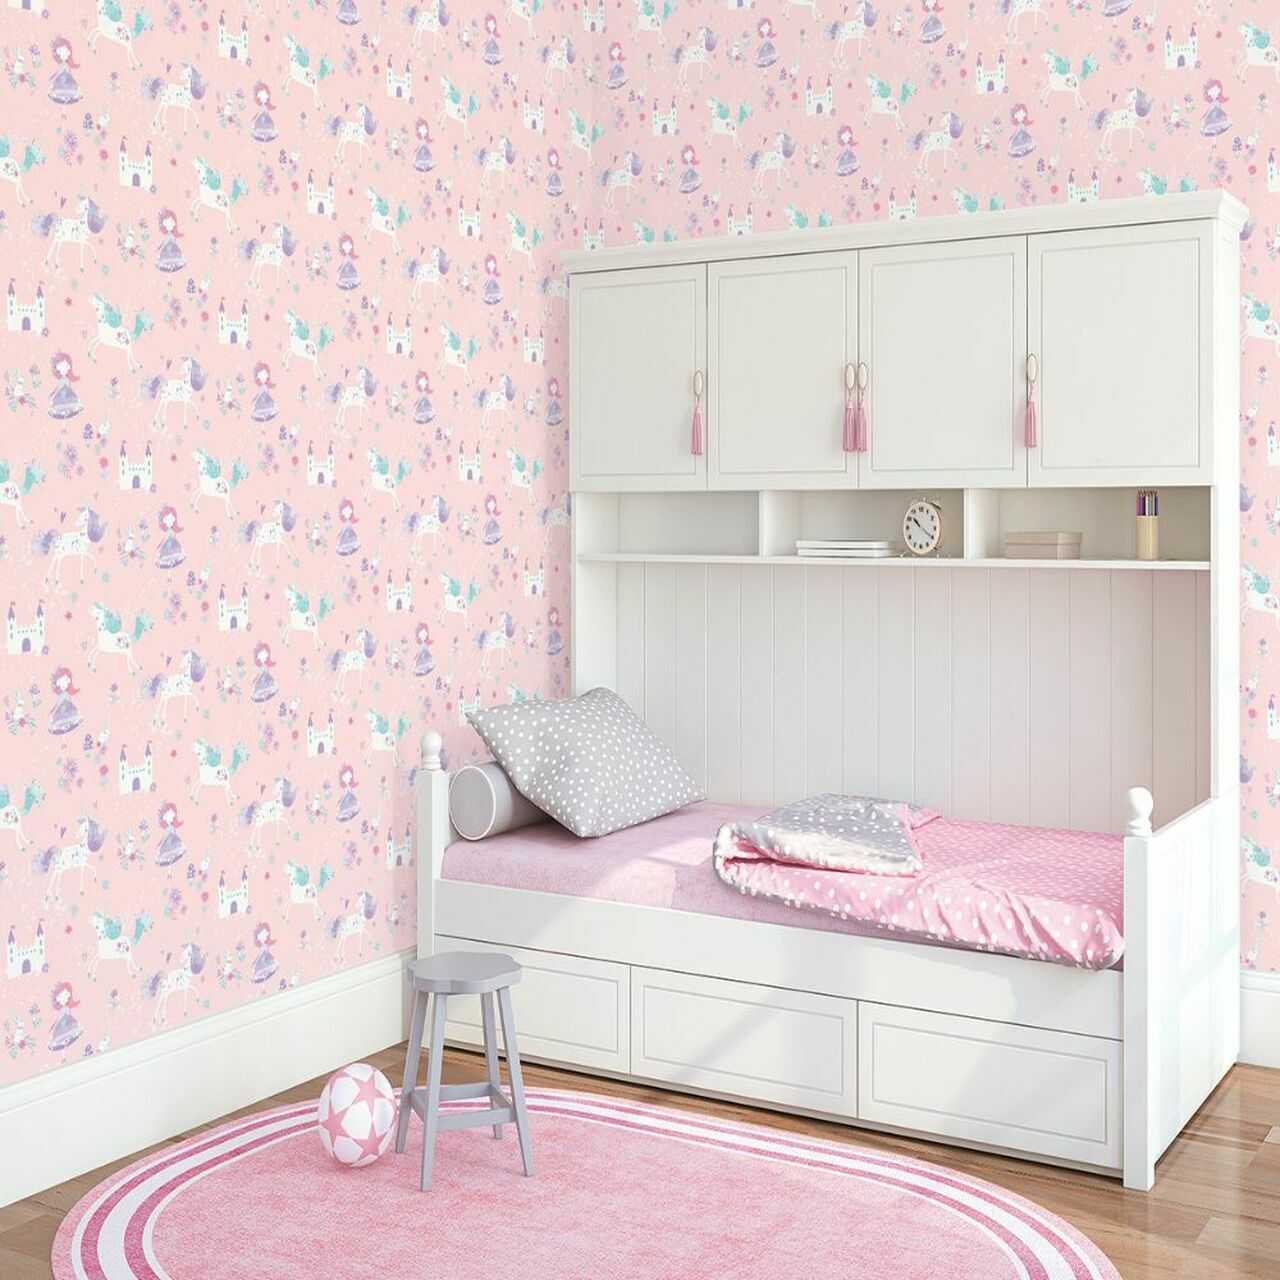 Just 4 Kids 2 Nursery Room Wallpaper - Pink